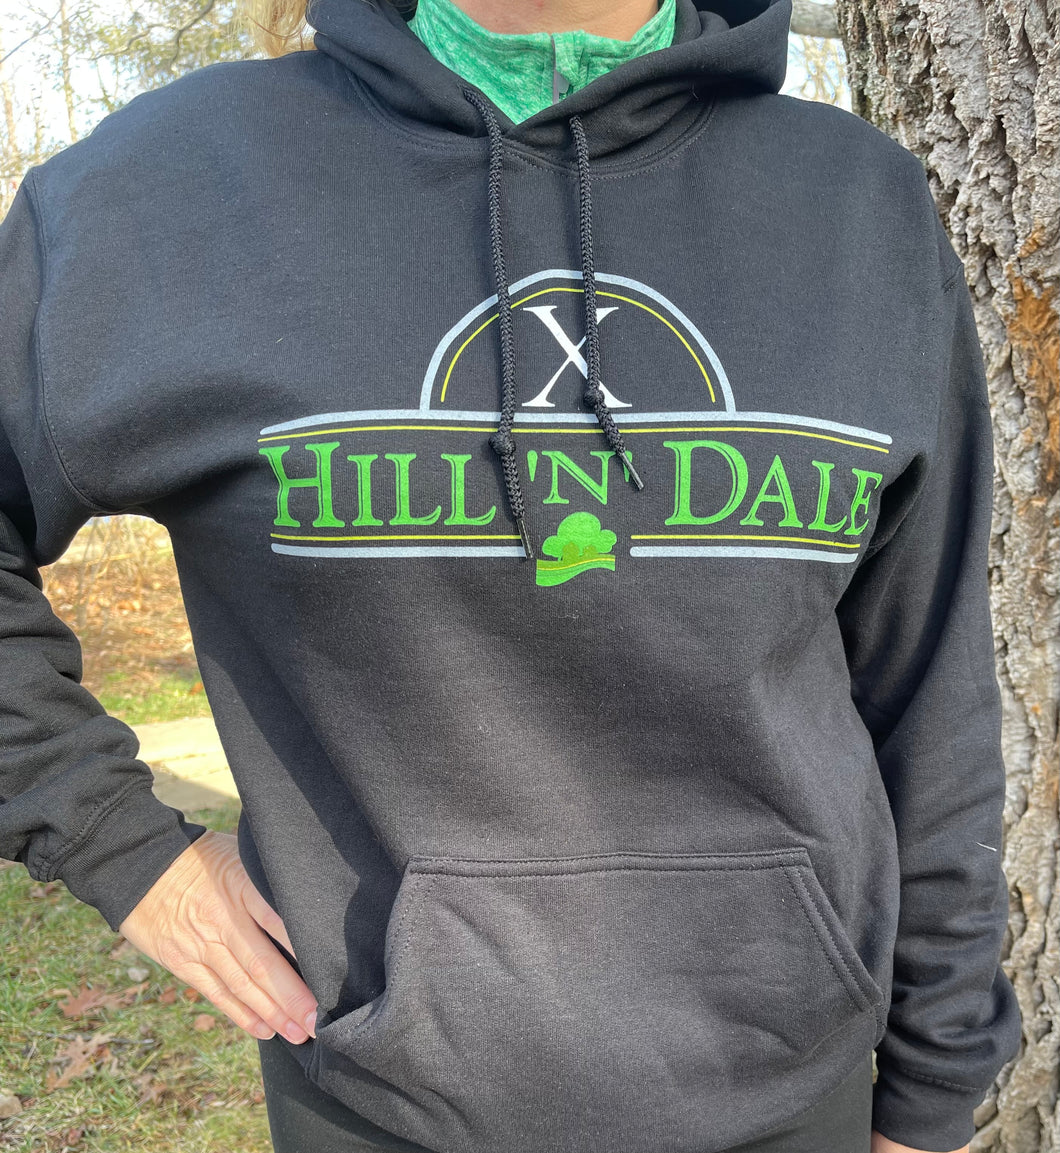 Hill ‘n’ Dale logo - Men’ or Women’s Sweatshirt